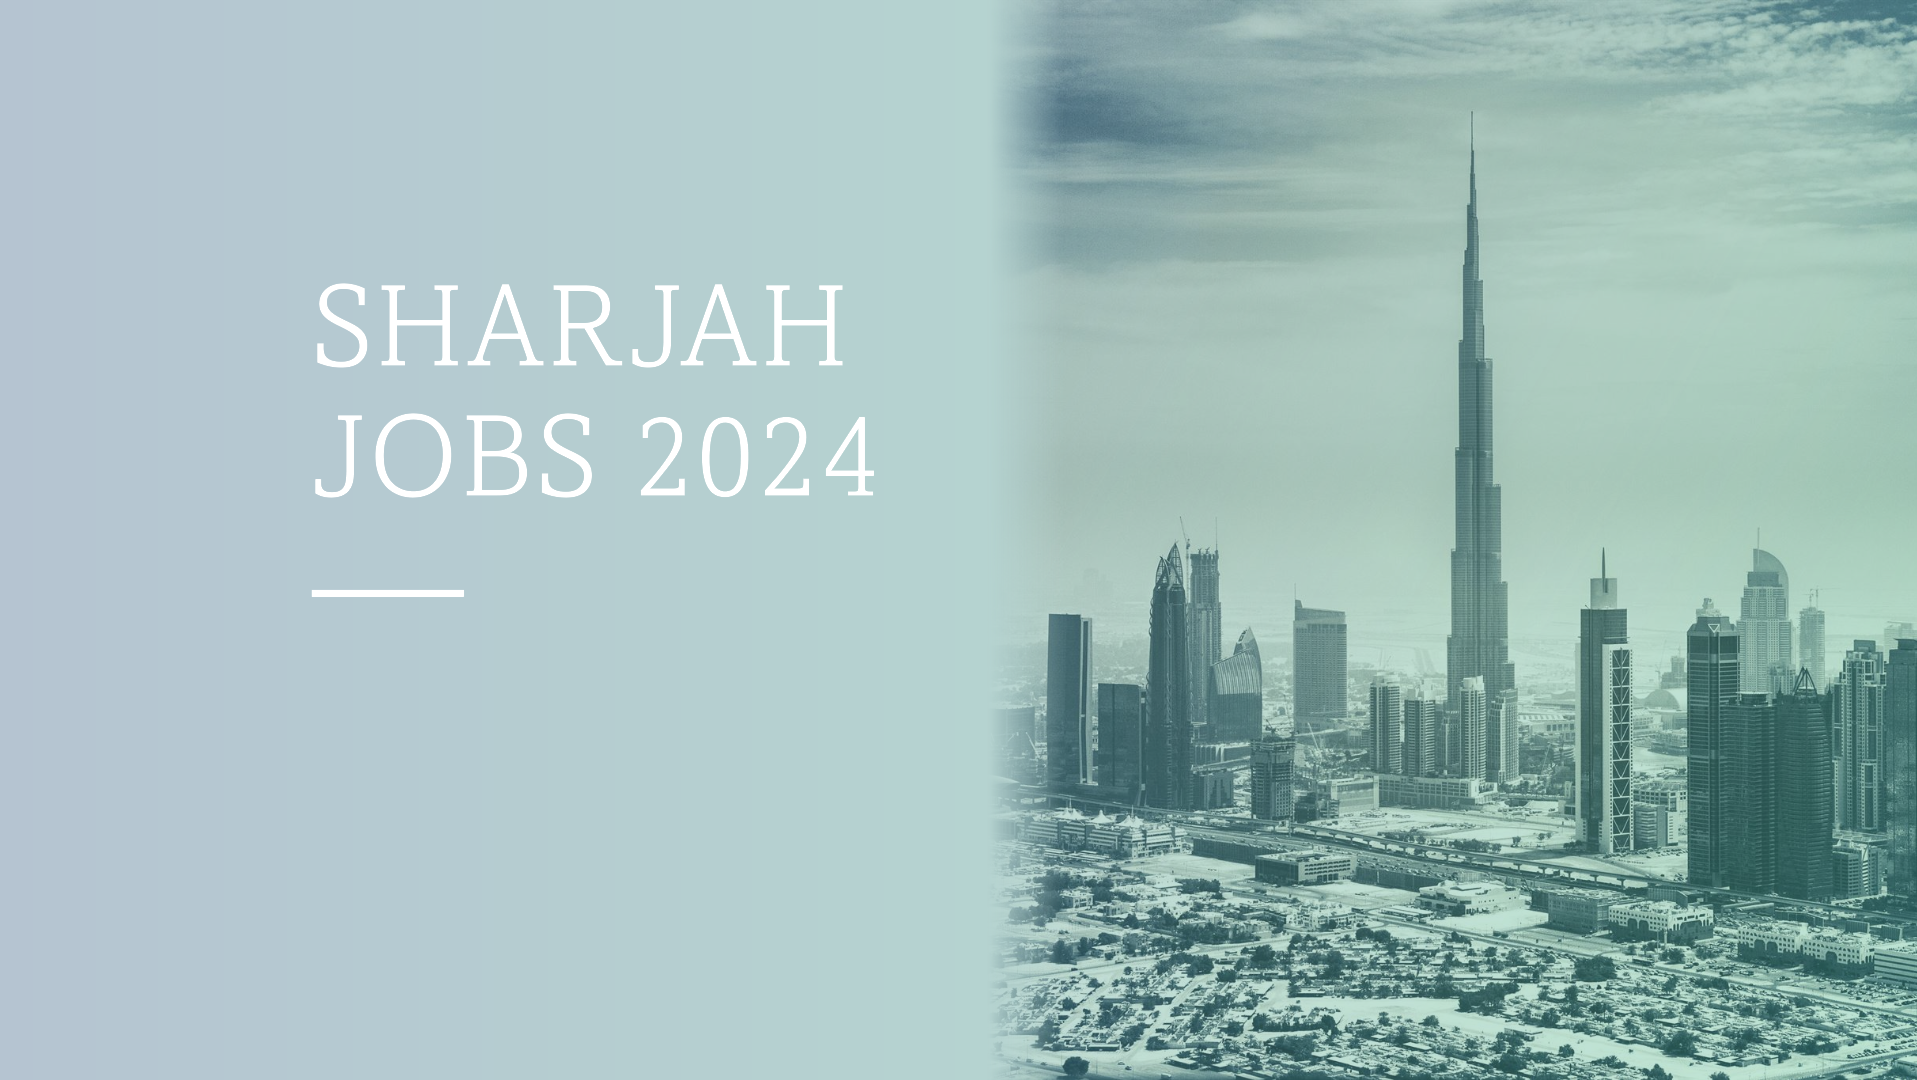 Sharjah jobs 2024